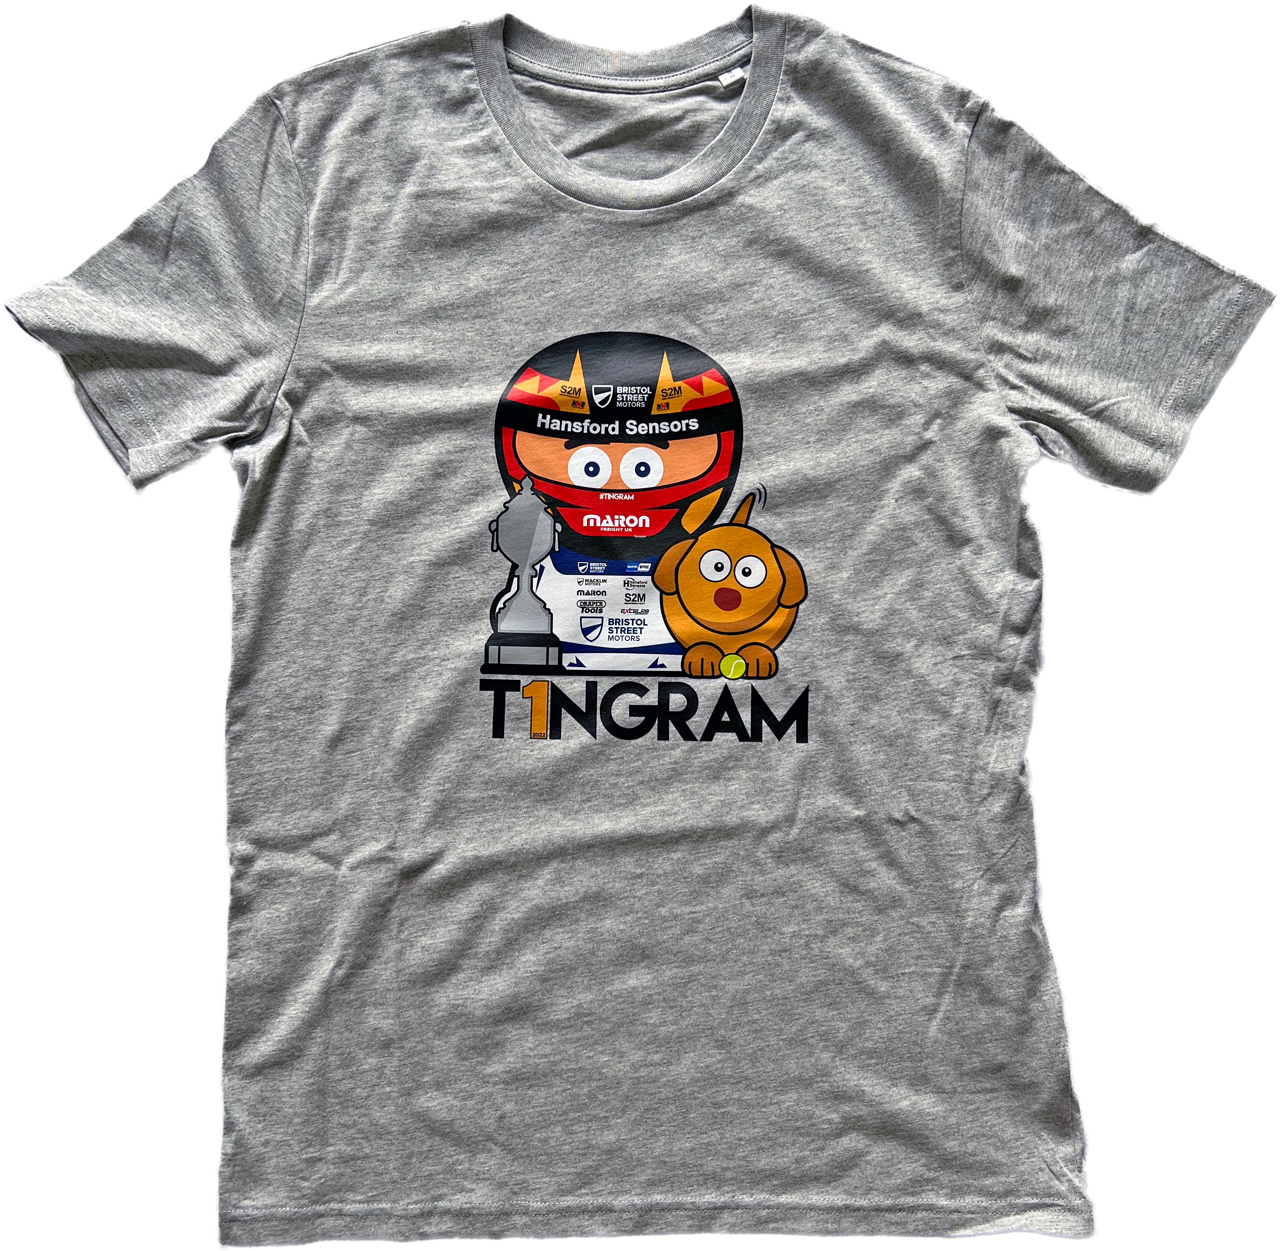 Tingram Kids T-shirt